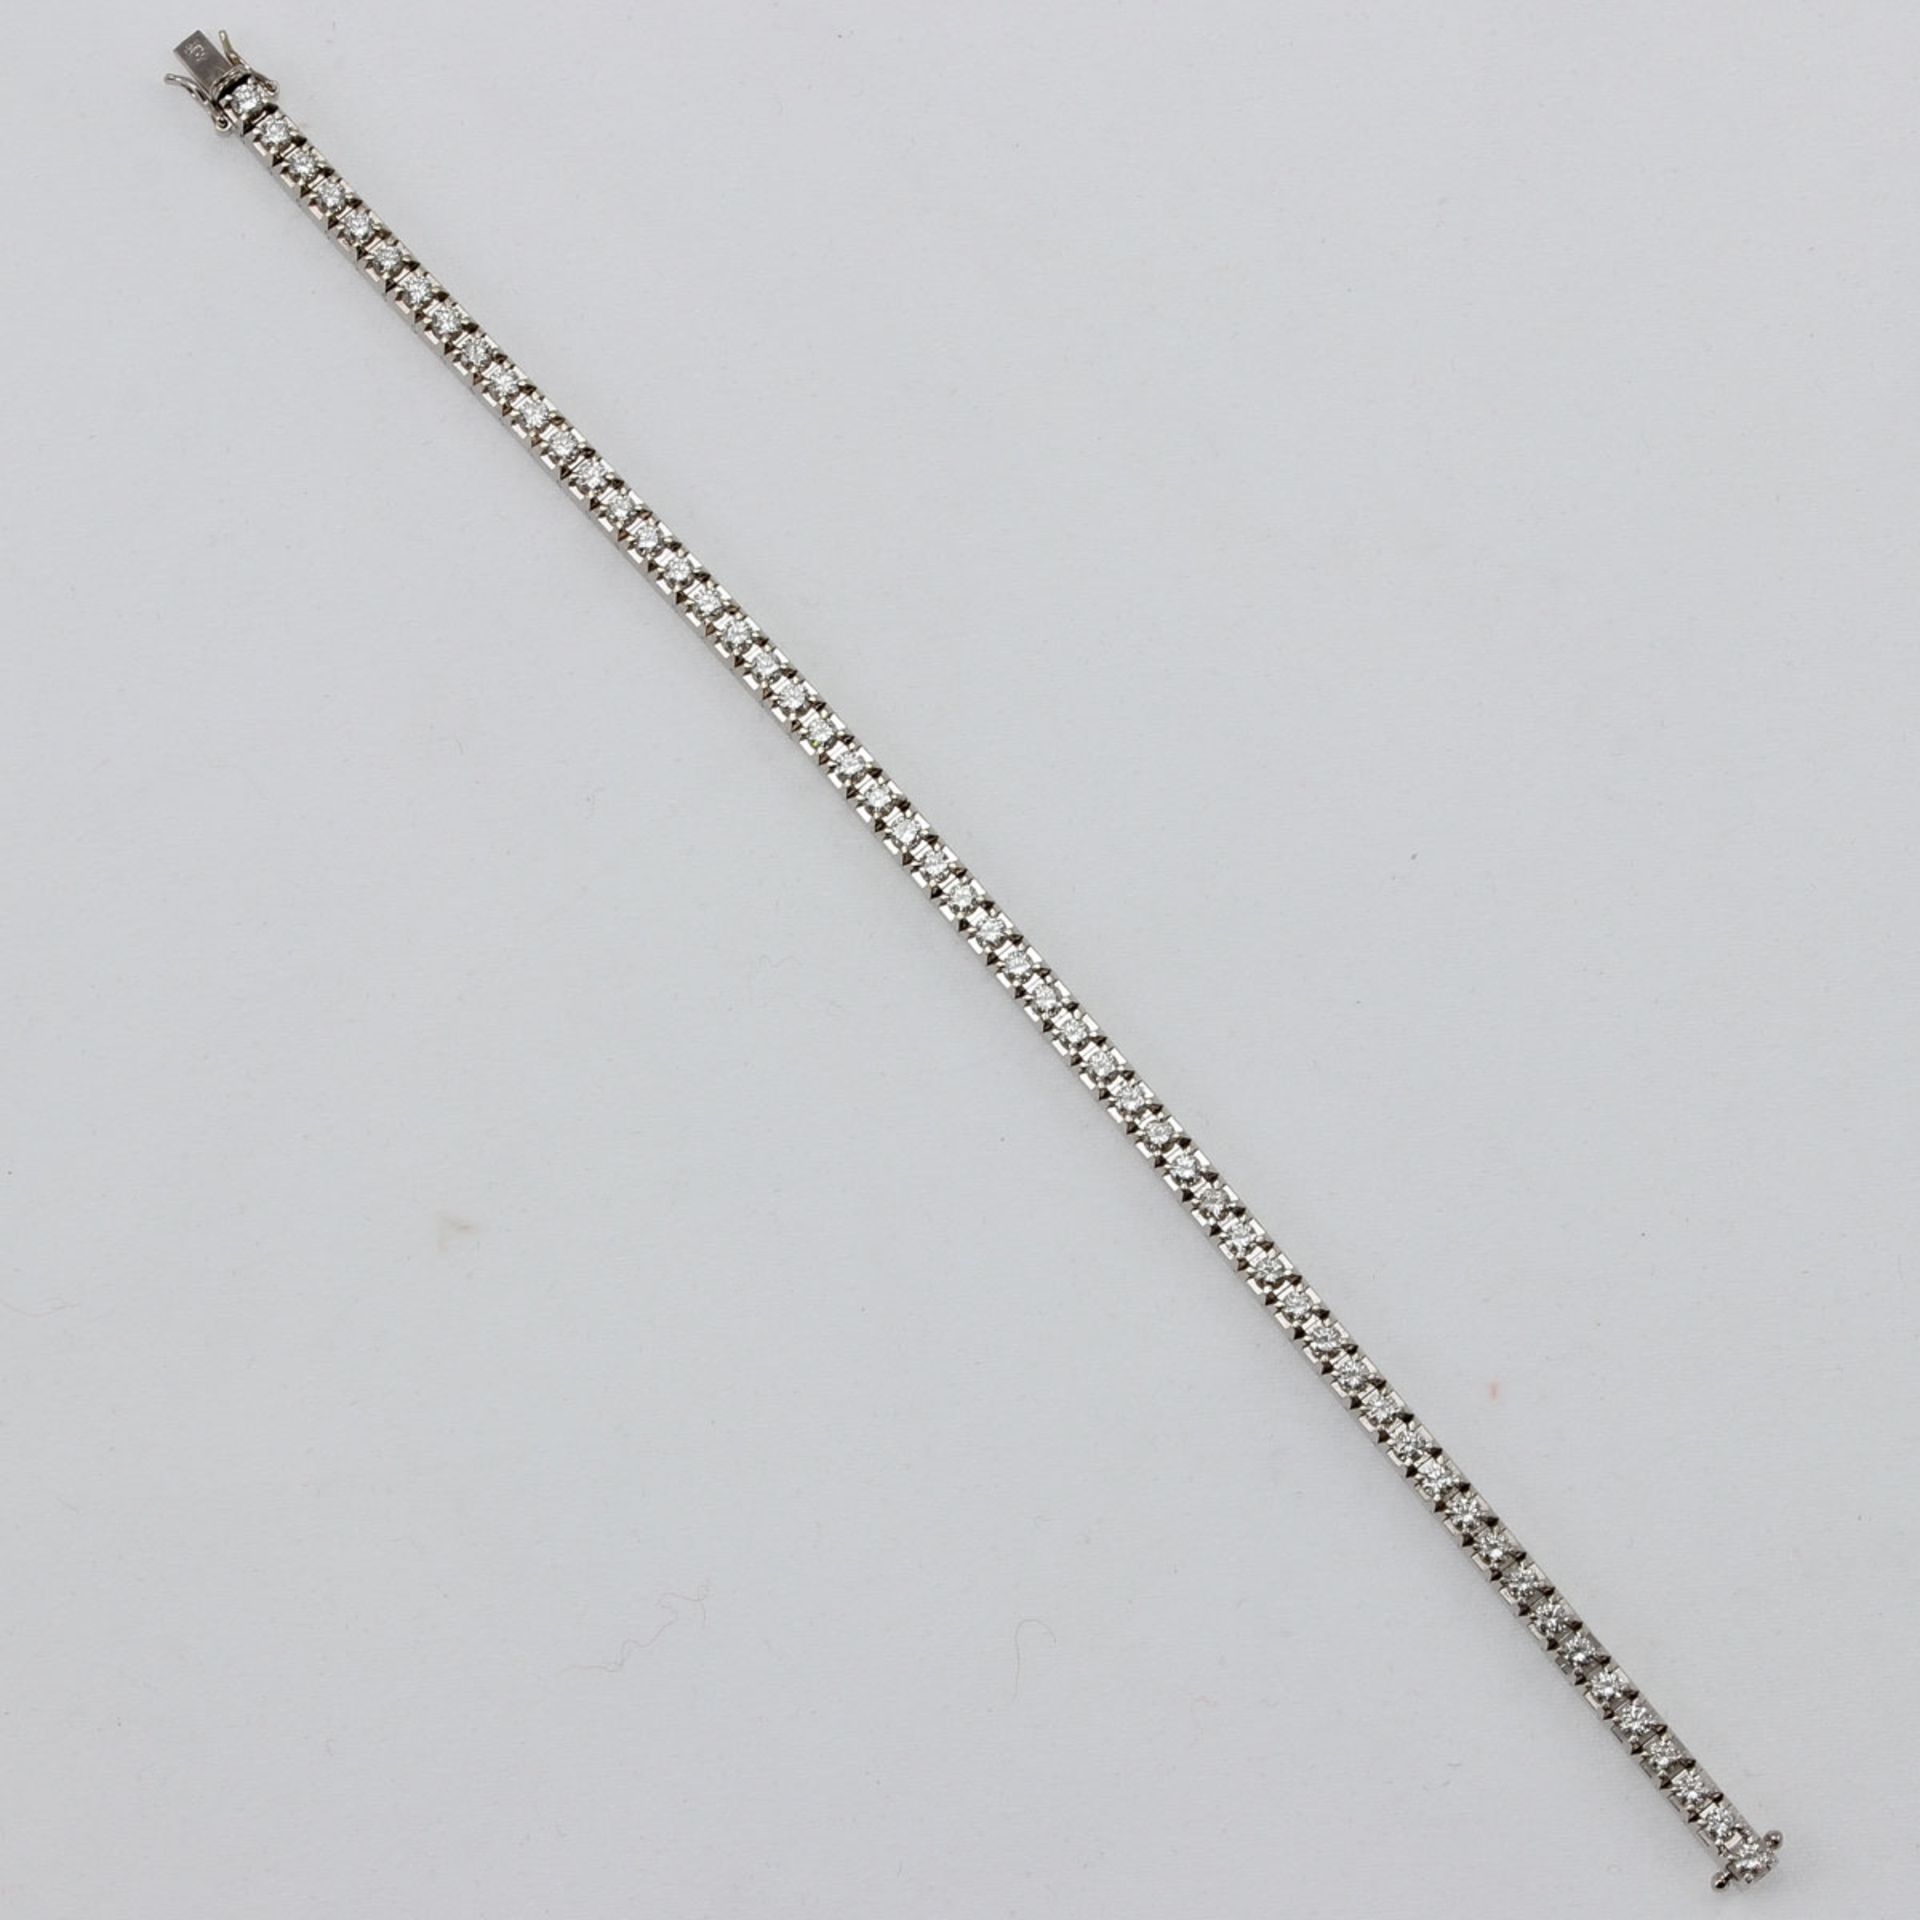 Tennisarmband - Rivière-Brillantarmband 750/- Weißgold, gestempelt. Gewicht: 21,9 g. 54 Bri